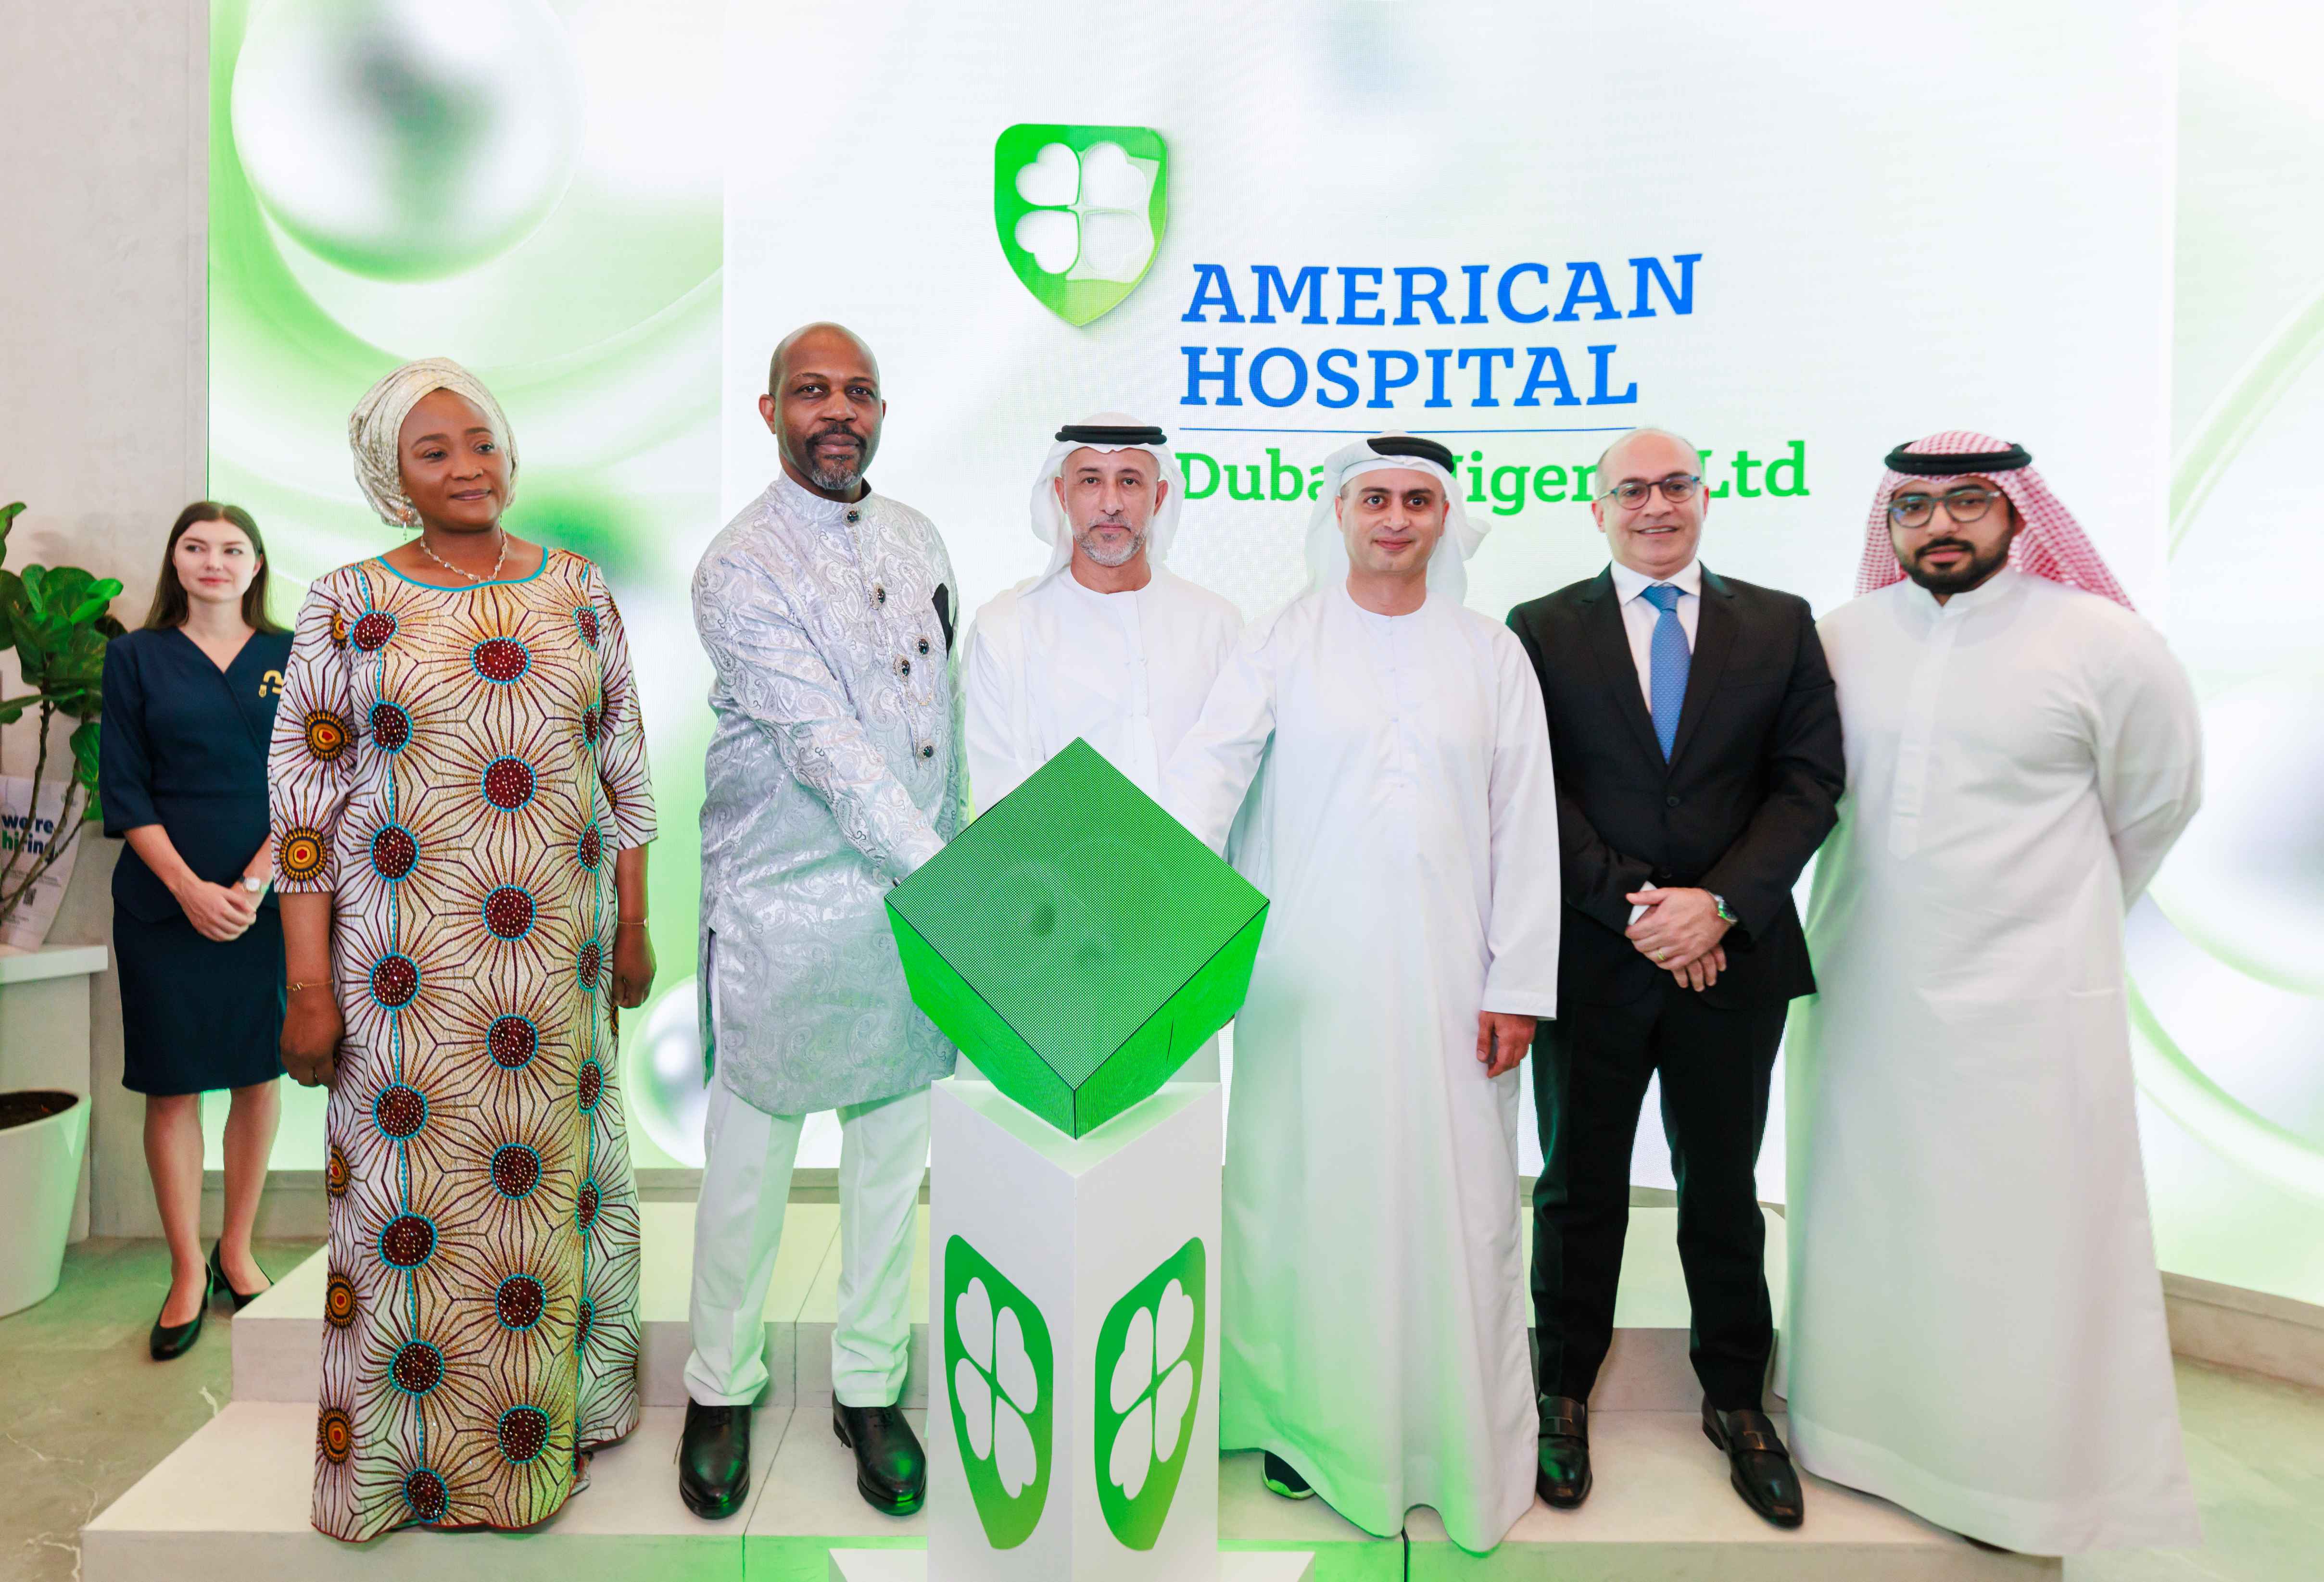 برعاية هيئة الصحة بدبي، يفتتح المستشفى الأمريكي دبي ثلاثة مكاتب تمثيلية للسياحة العلاجية في نيجيريا ضمن خطة توسعية تضم 30 مكتباً في أفريقيا و شرق أوروبا